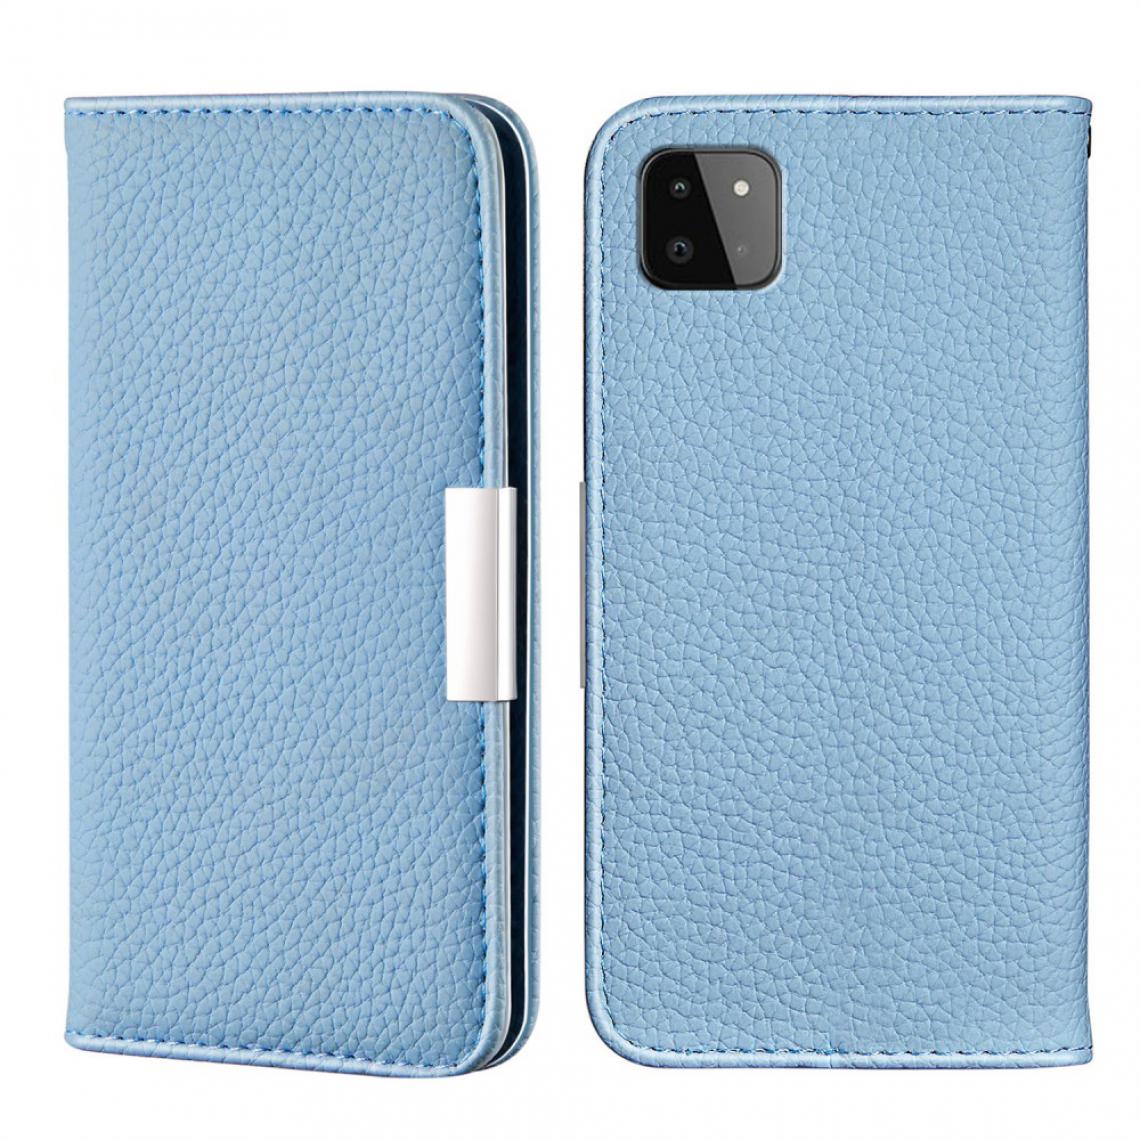 Other - Etui en PU Peau de Litchi Auto-absorbée avec support et porte-cartes bleu pour votre Samsung Galaxy A22 5G (EU Version) - Coque, étui smartphone